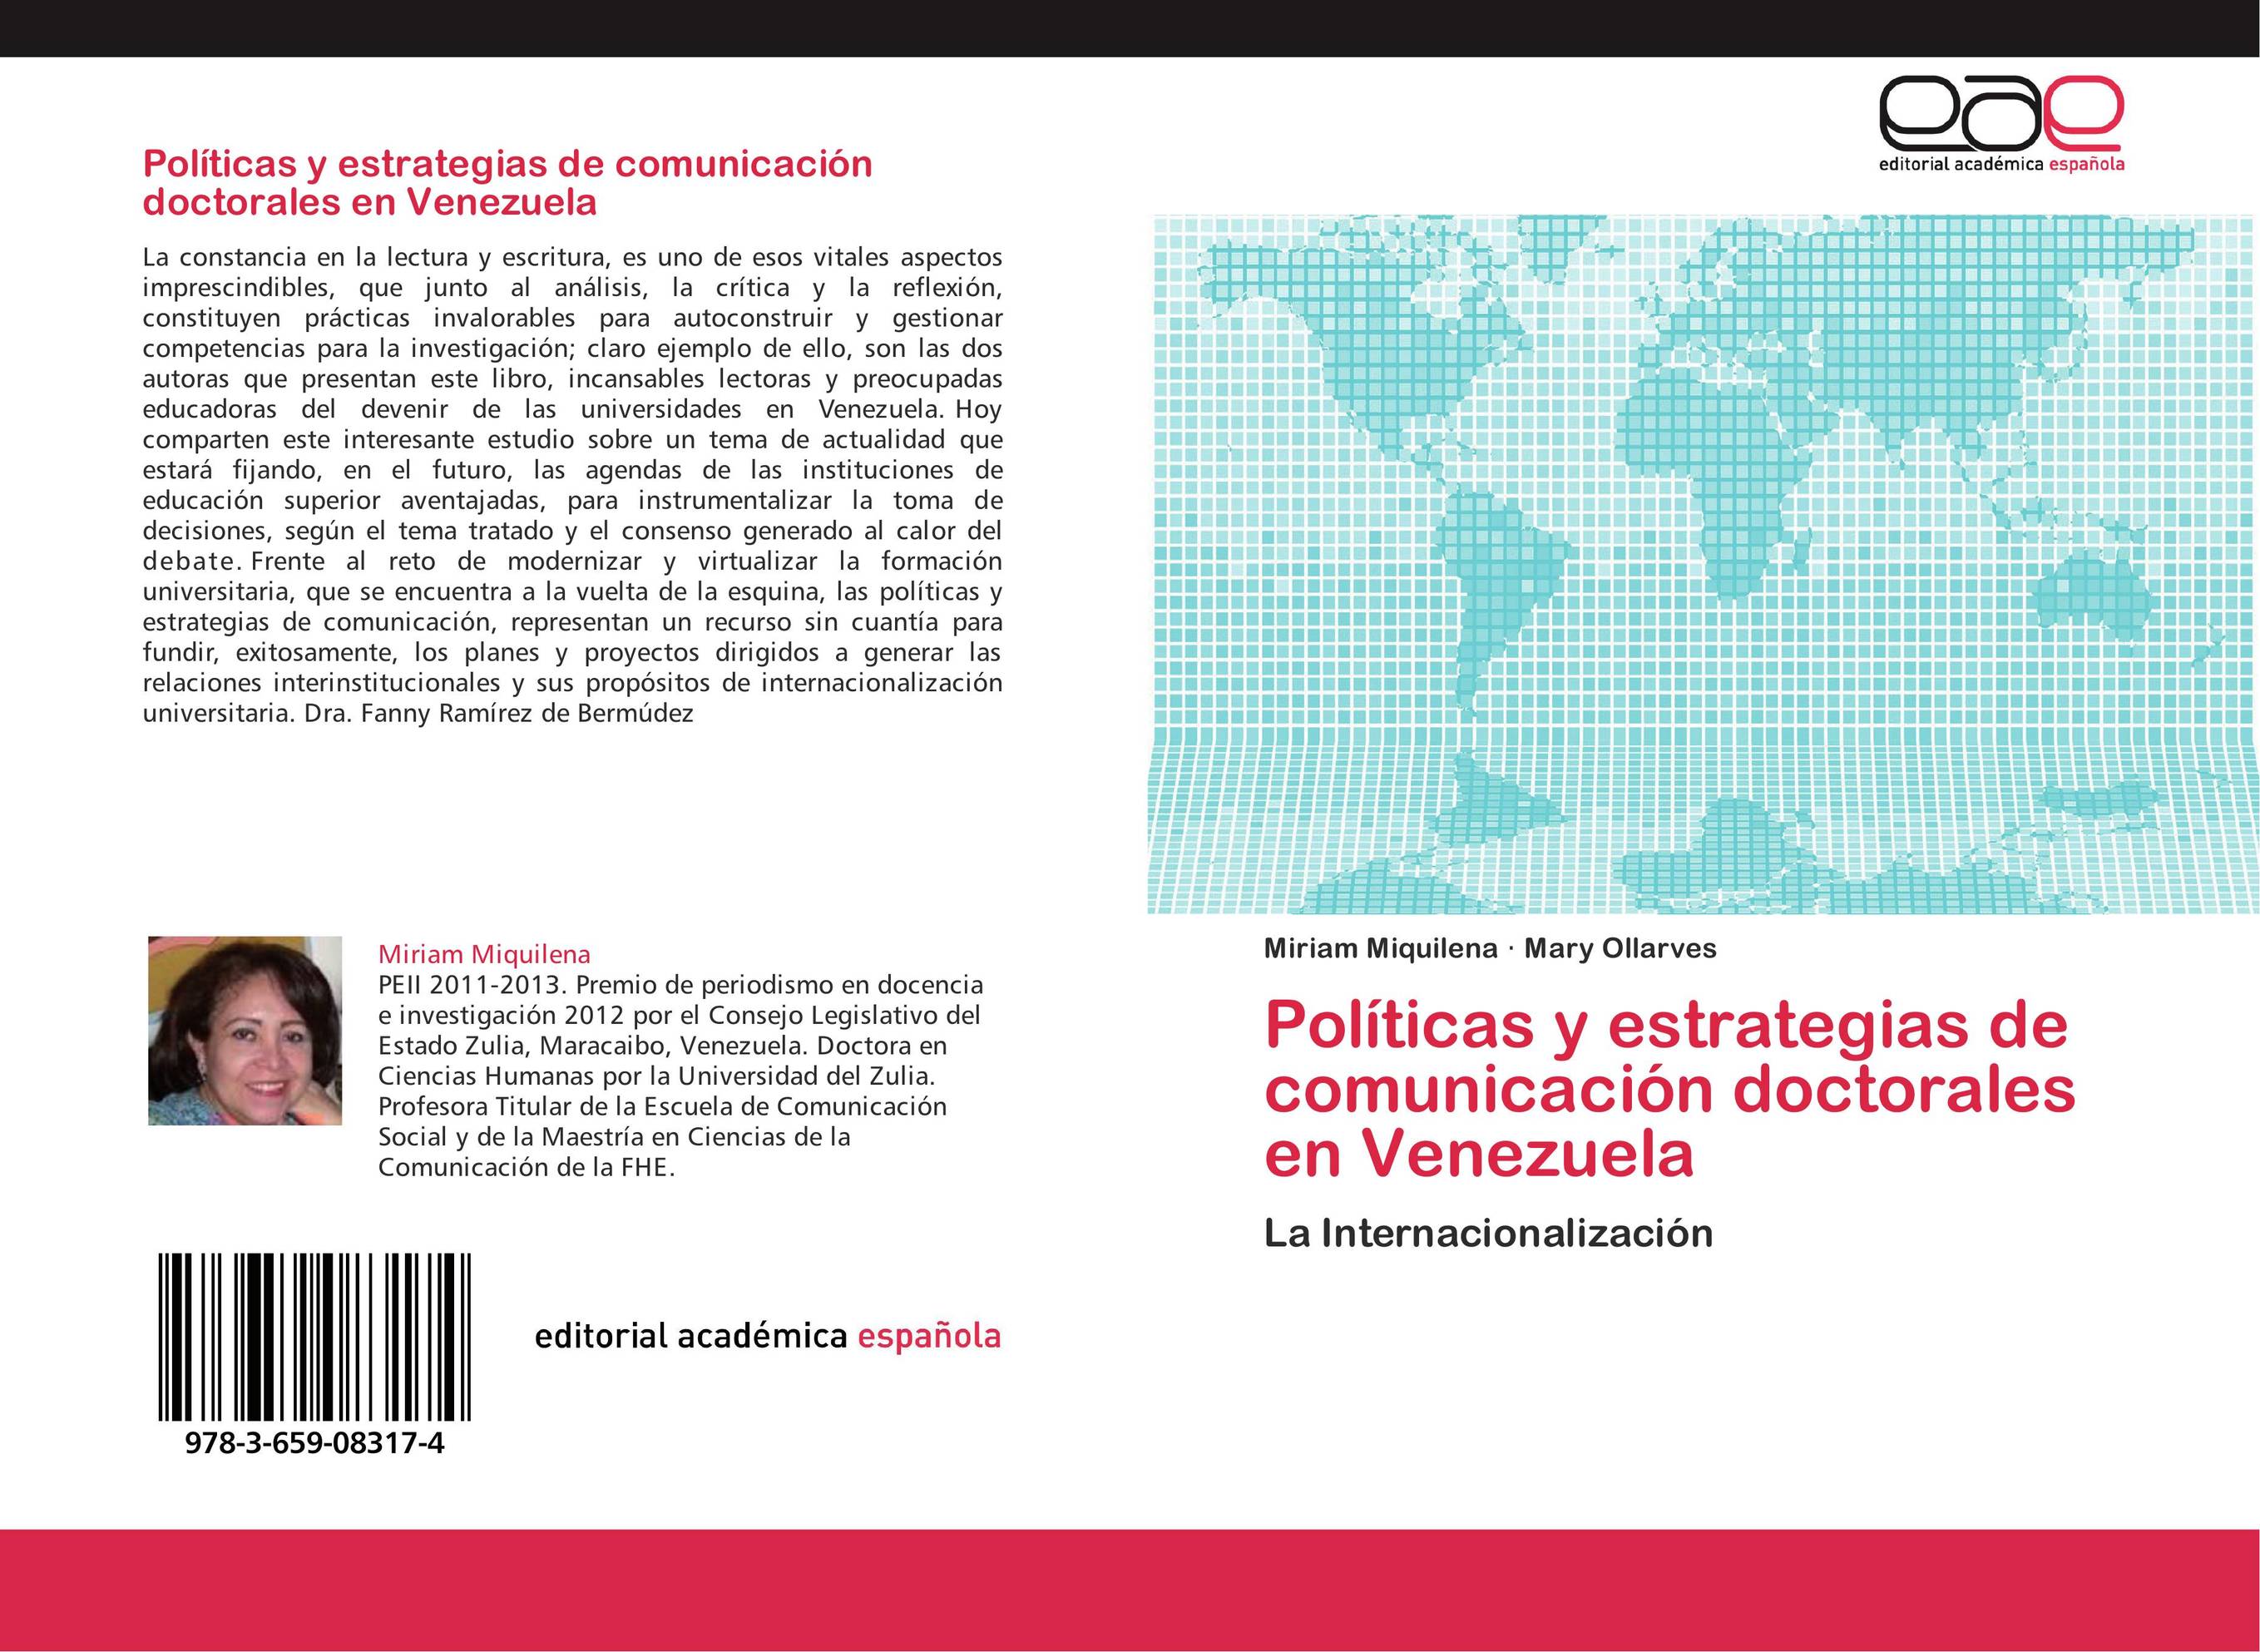 Políticas y estrategias de comunicación doctorales en Venezuela